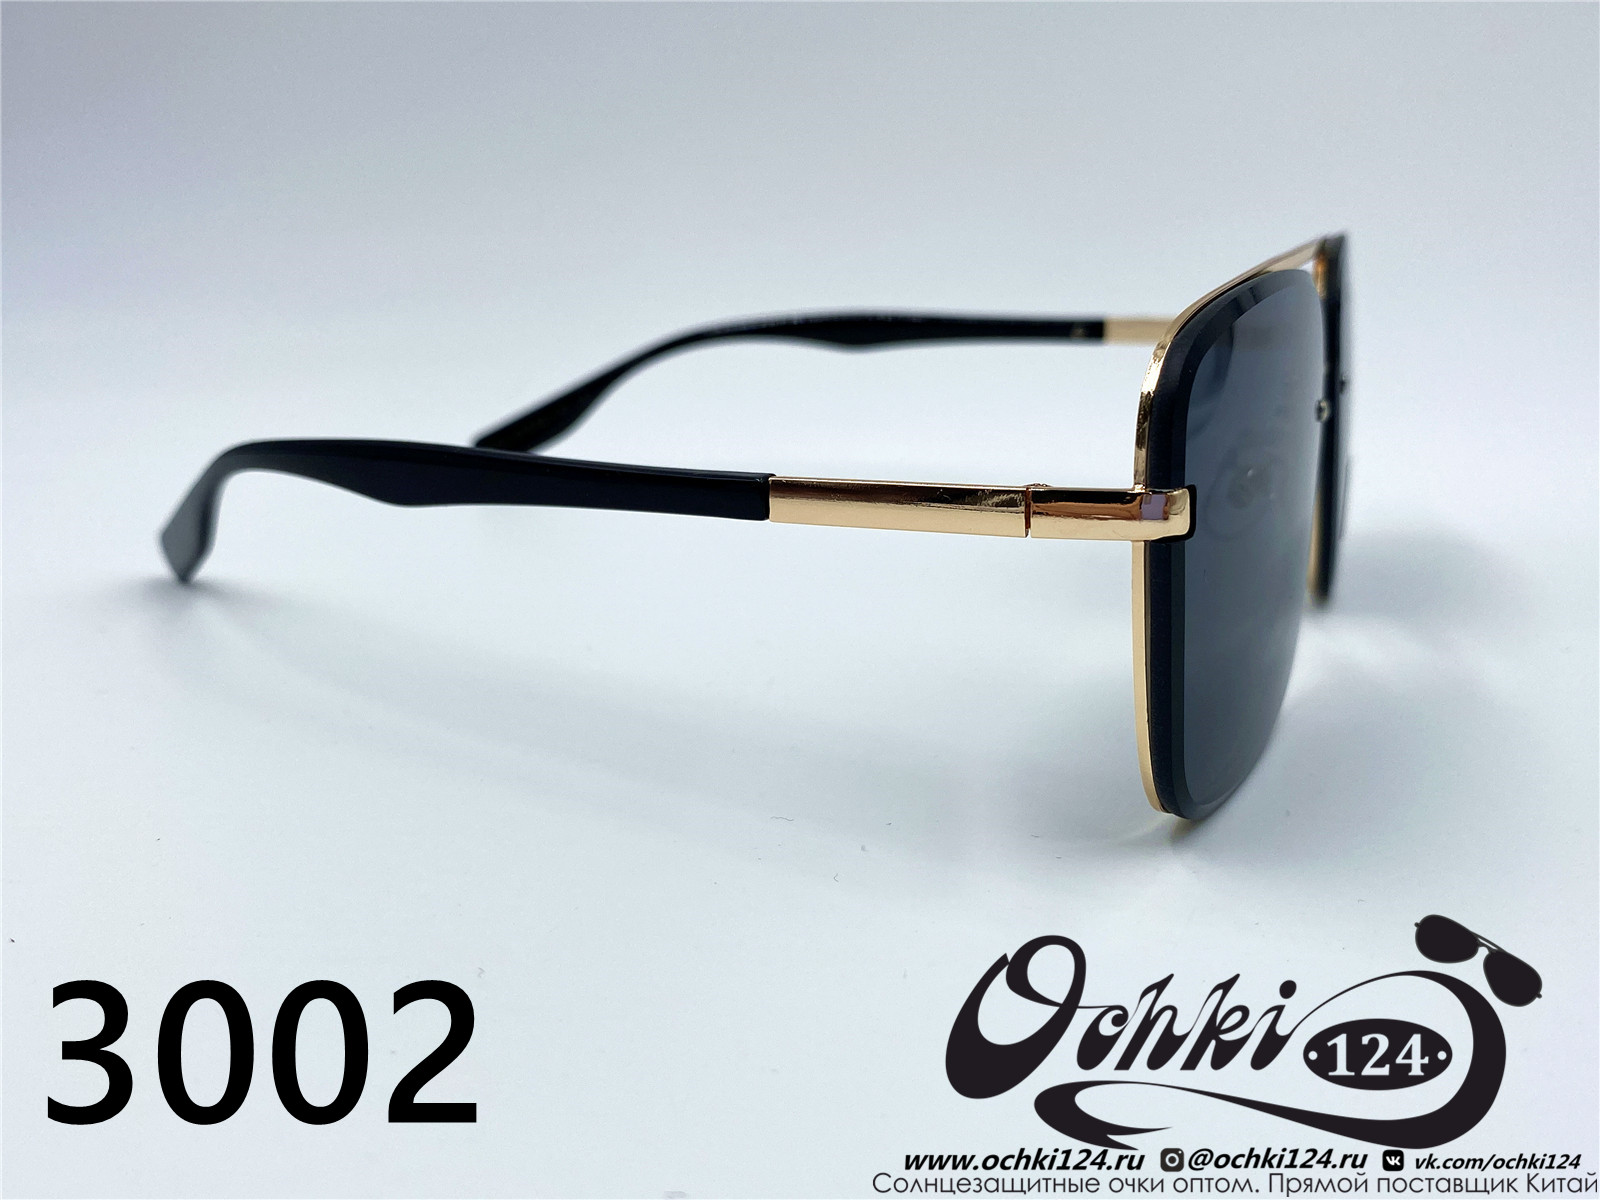  Солнцезащитные очки картинка 2022 Унисекс Пластик Квадратные Caipai 3002-6 